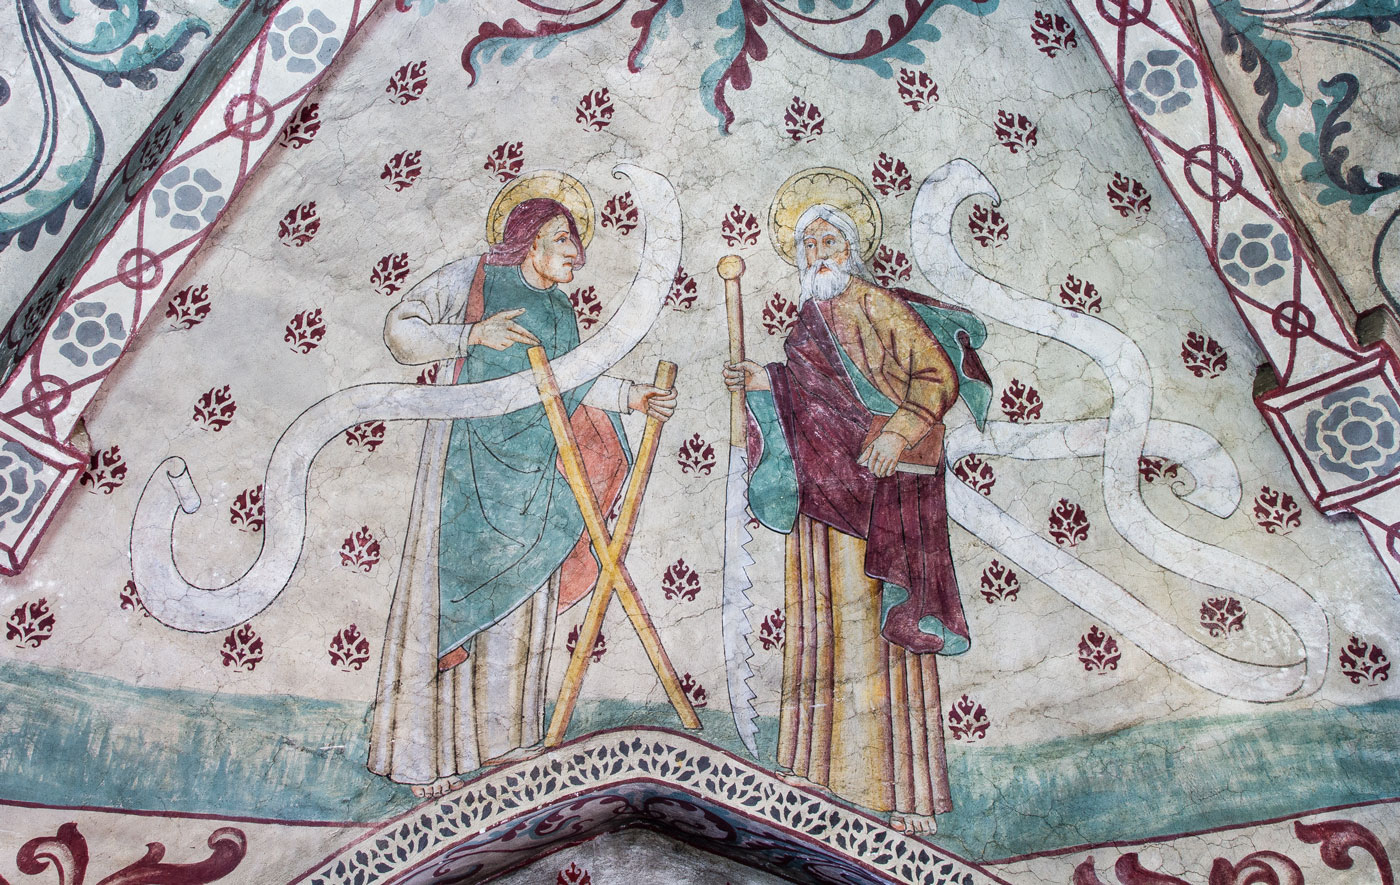 Aposteln Andreas med sitt kors; Aposteln Simon med såg - Vansö kyrka